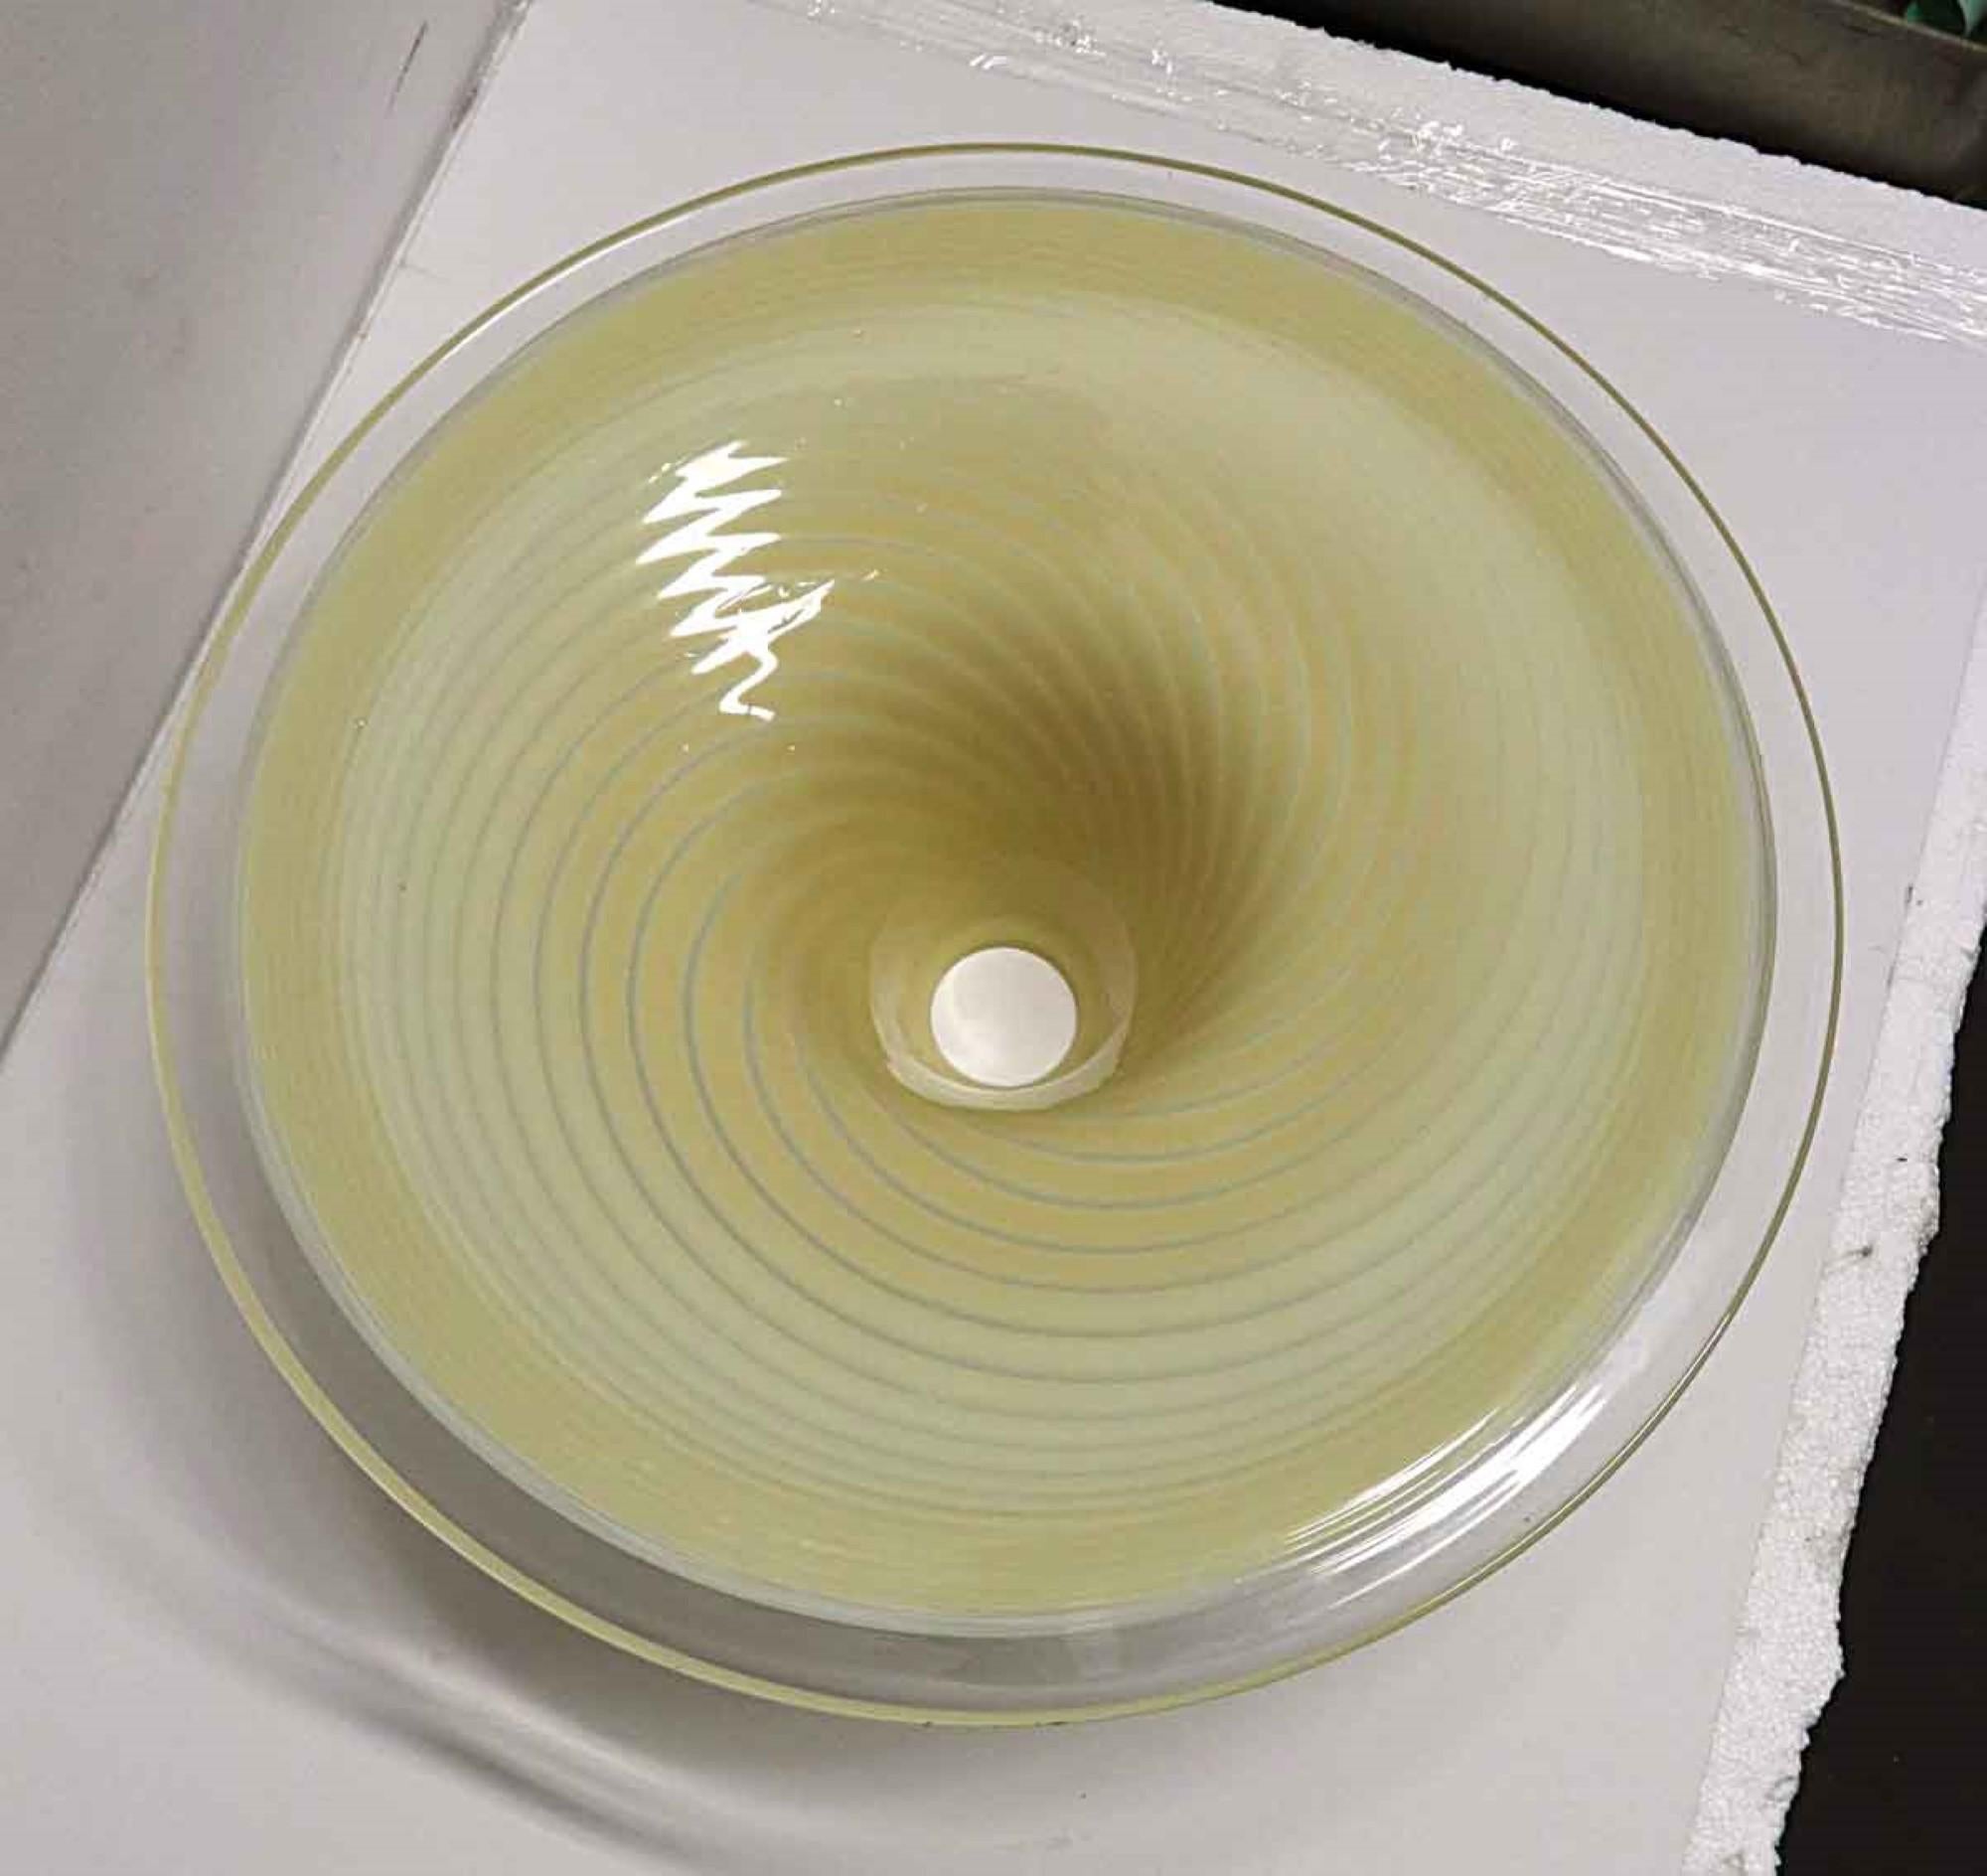 1980s Italian Hand Blown Murano Glass Pendant Light Shade, Vanilla Swirl 1